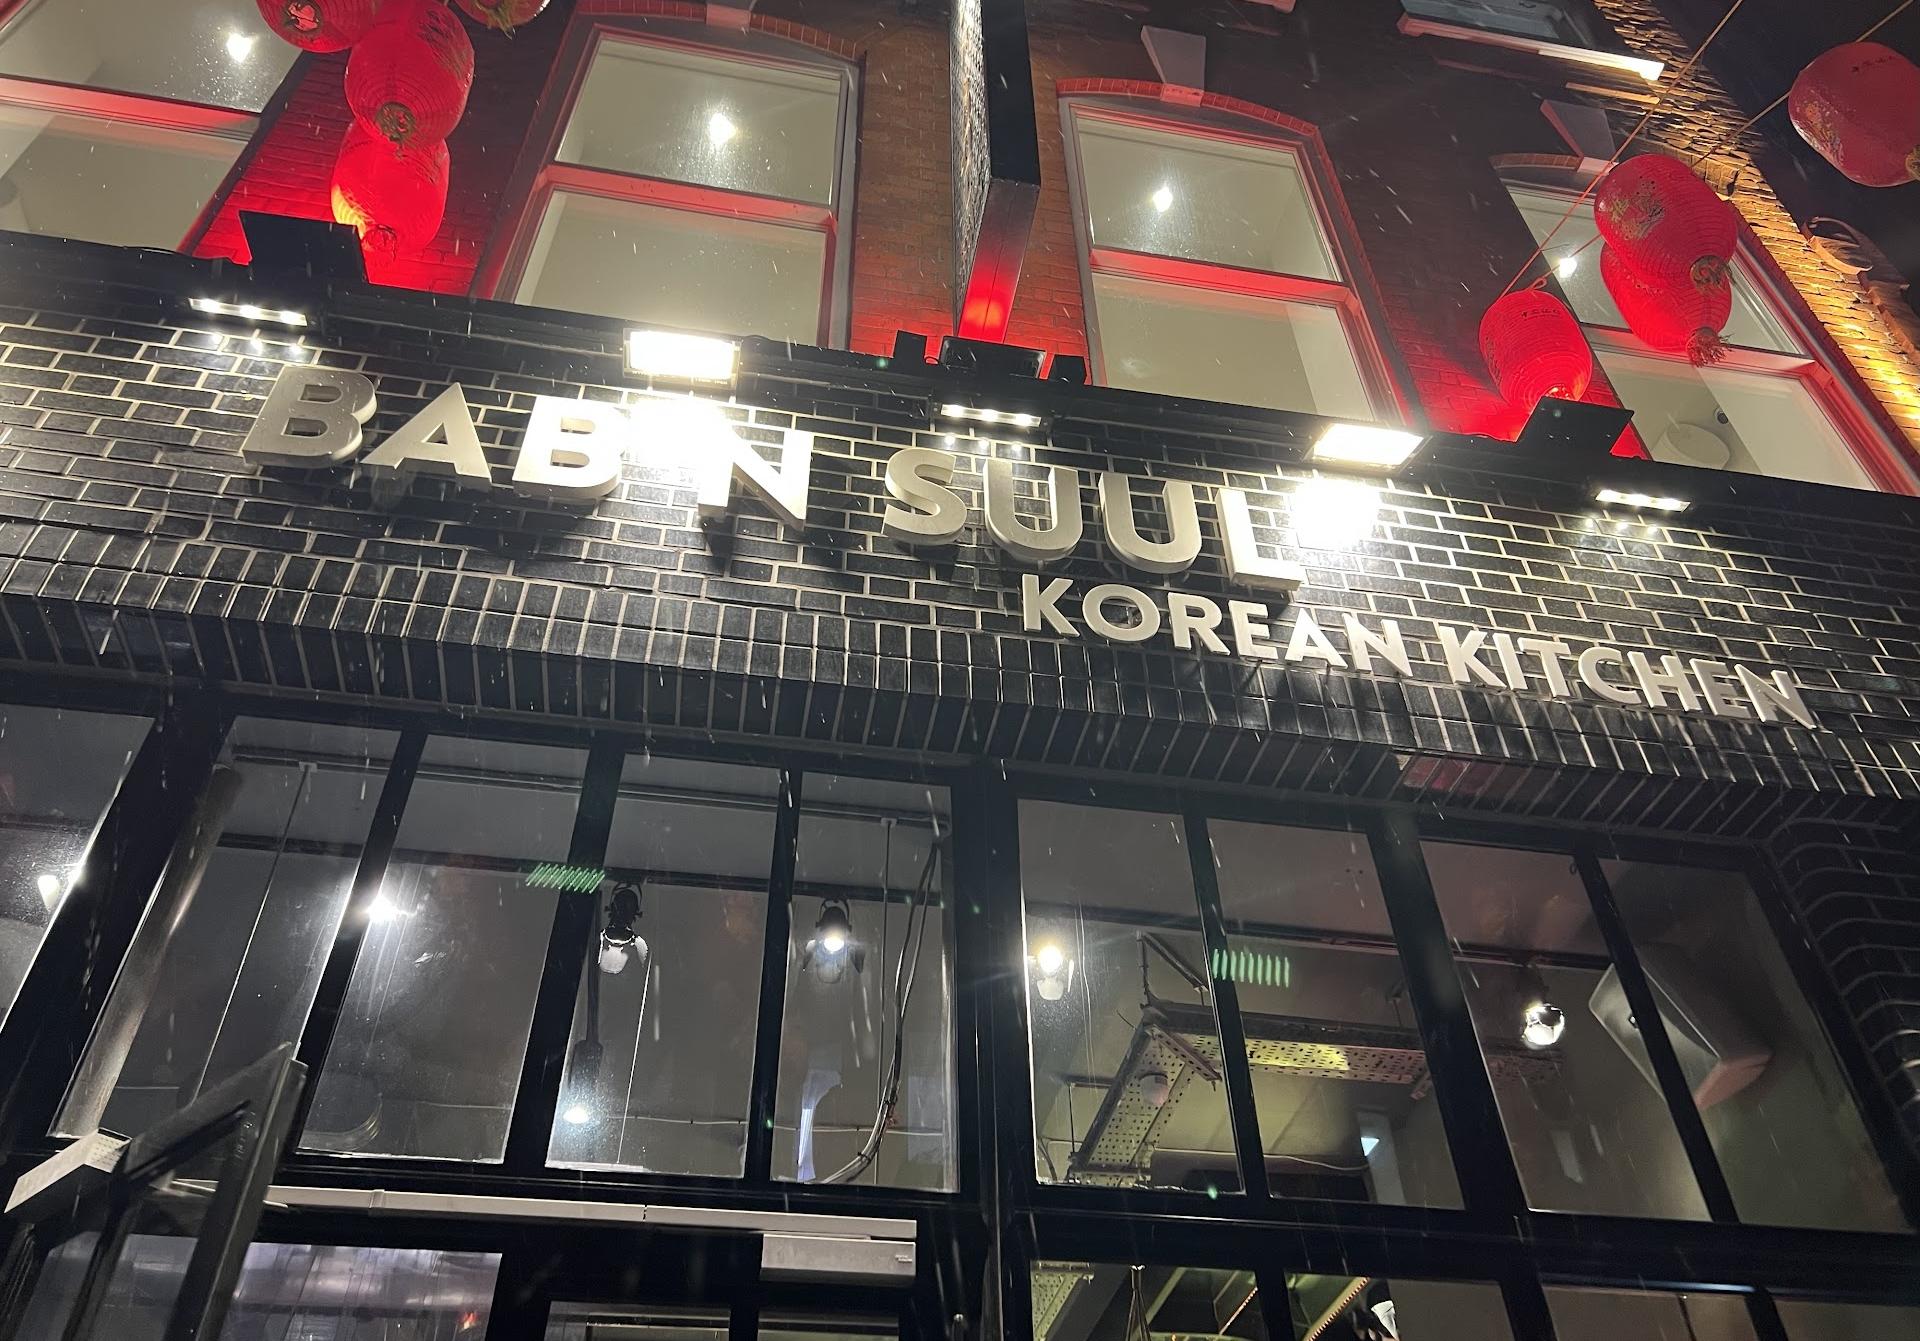 باب إن سول، المطبخ الكوري